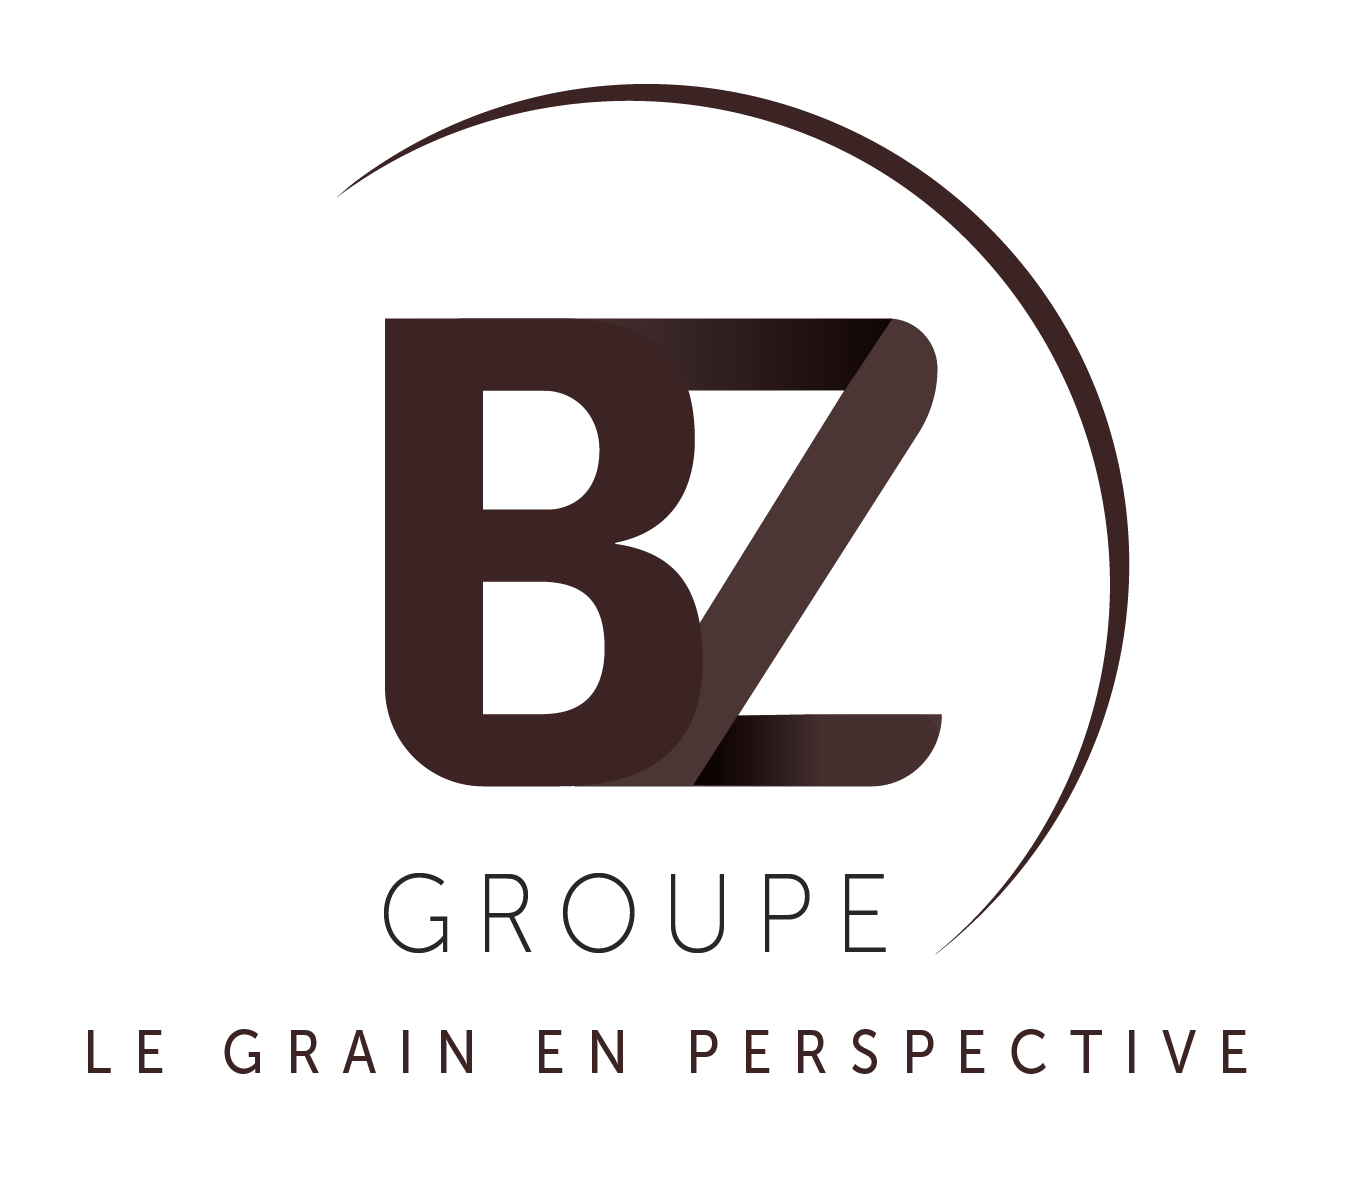 Groupe BZ (le nouveau nom de Beuzelin), collecte de grains, import-export  et logistique portuaire